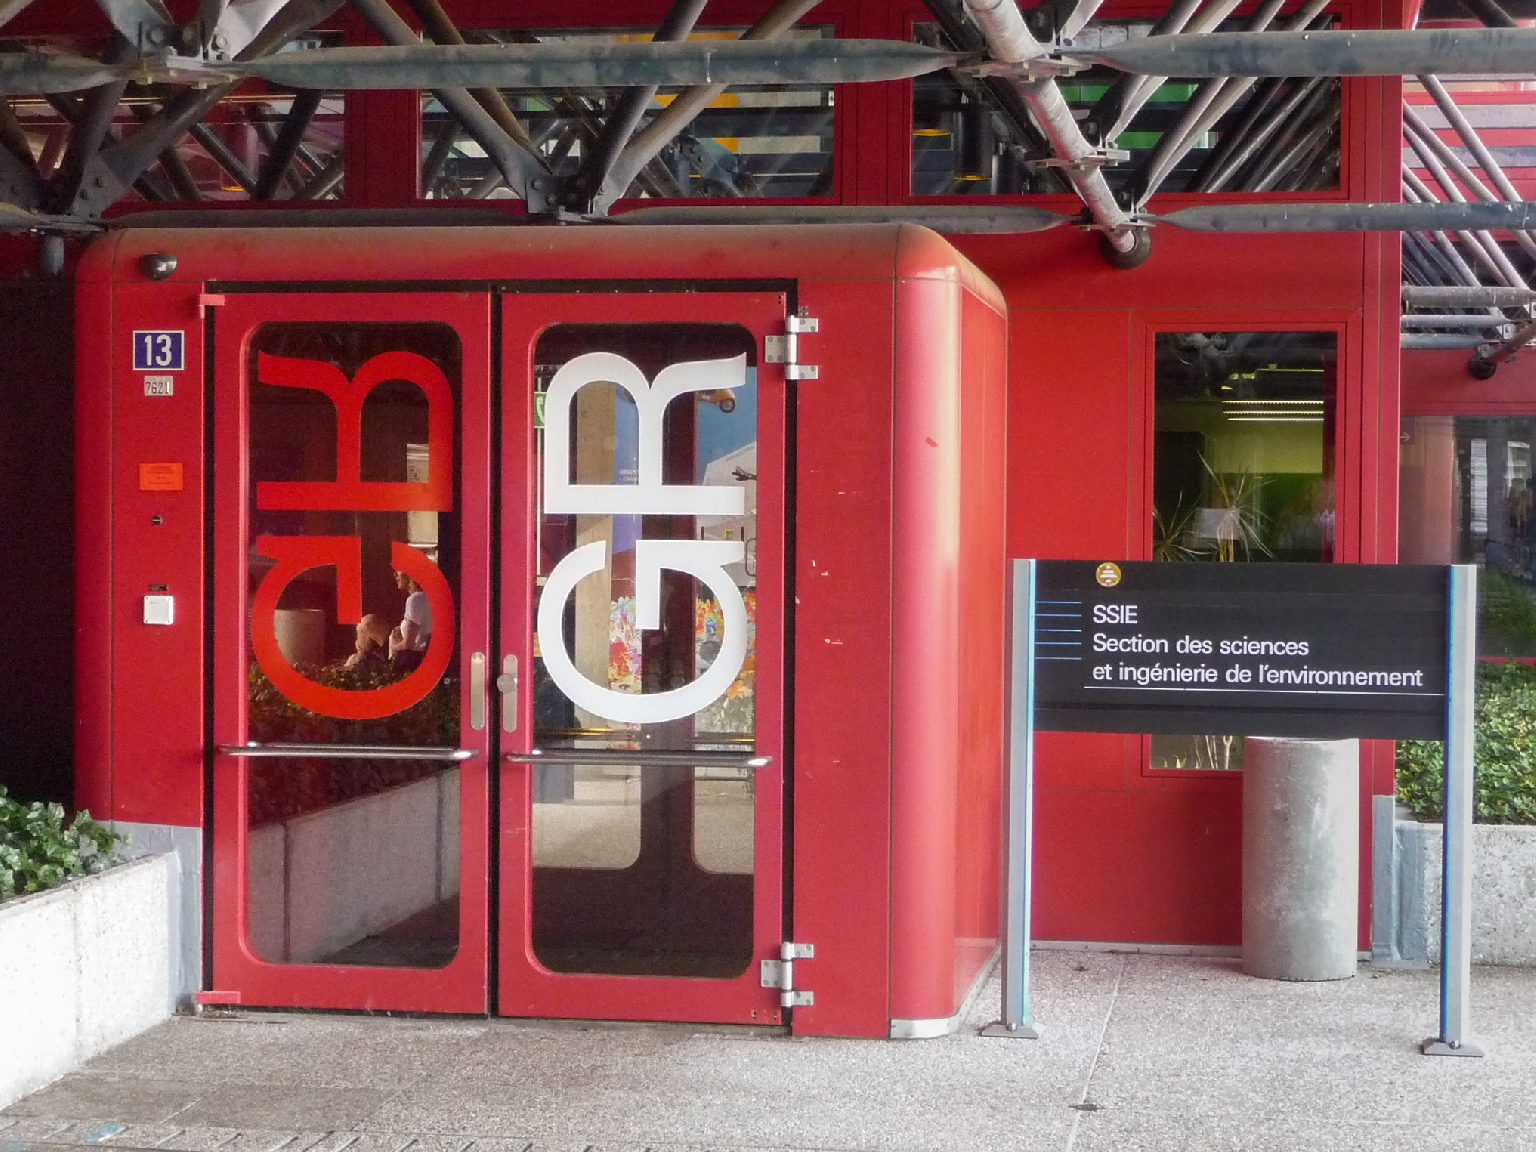 Entrée du bâtiment GR, 2019 (photo Faure) La signalétique de l’entrée combine le système de Georges Calame (à gauche) et celui de Theo Ballmer (à droite).